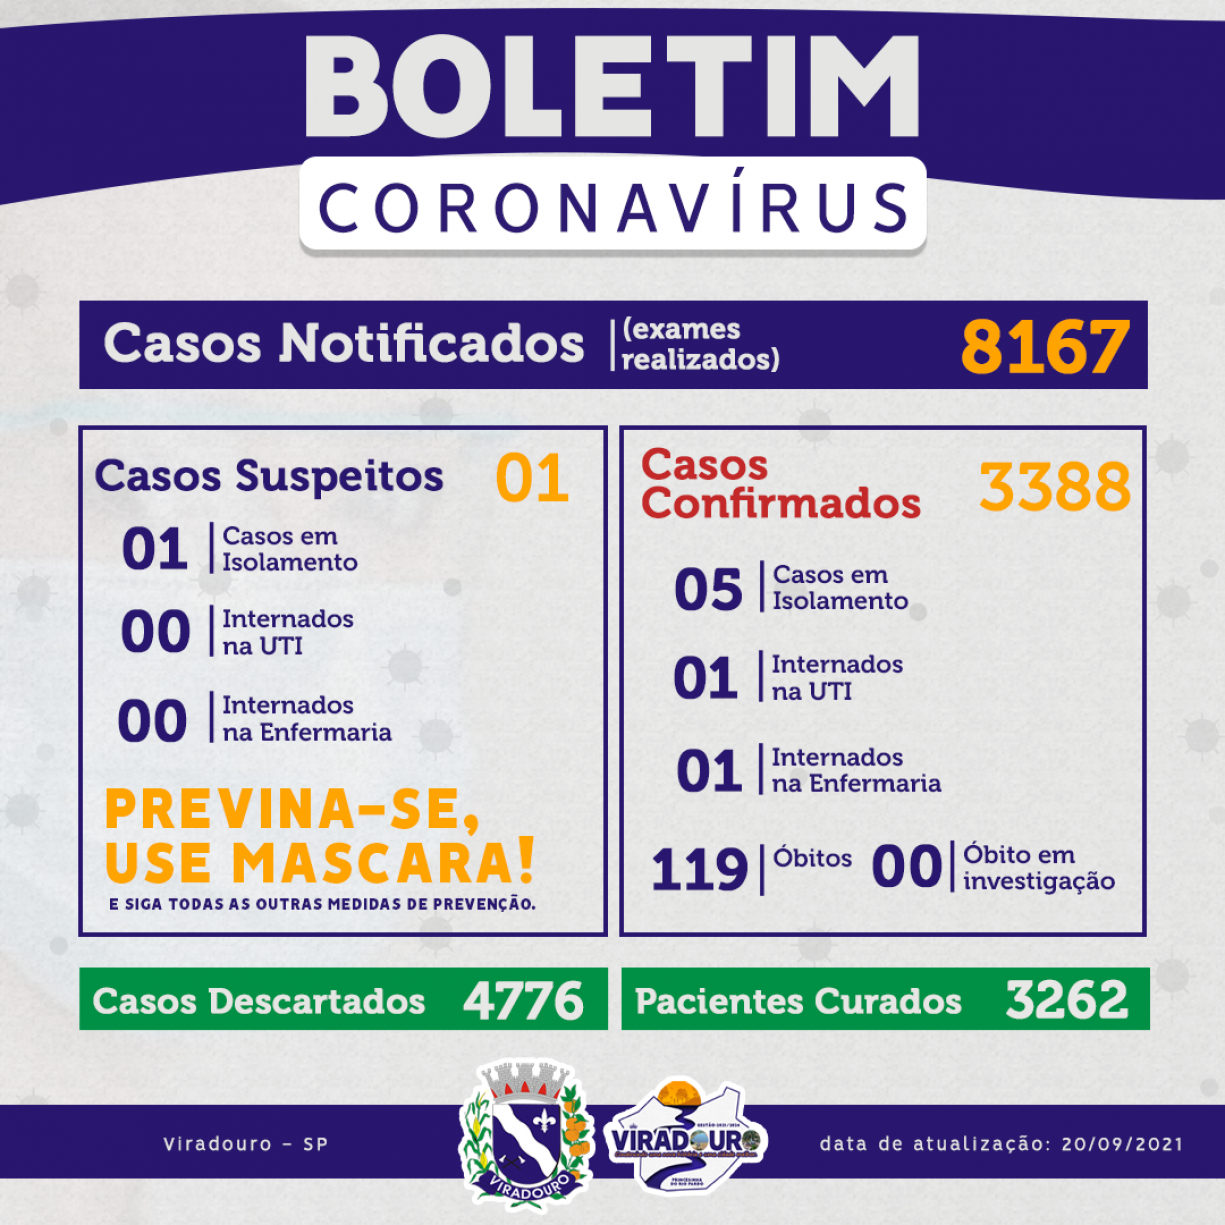 CORONAVÍRUS: BOLETIM EPIDEMIOLÓGICO (ATUALIZAÇÃO 20/09/2021)